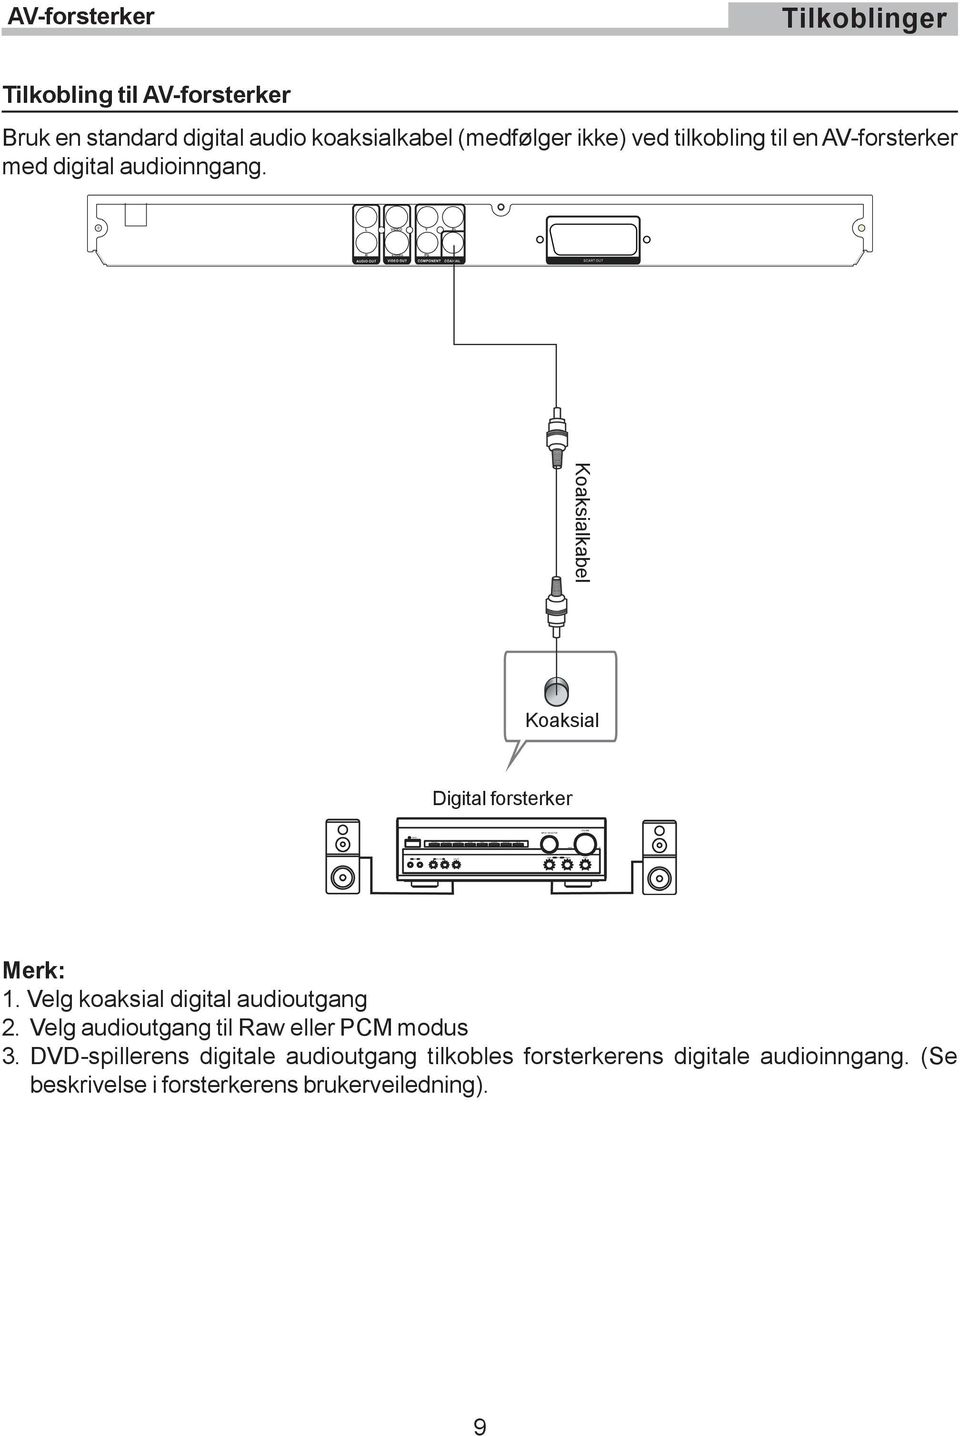 Koaksialkabel Koaksial Digital forsterker Merk: 1. Velg koaksial digital audioutgang 2.